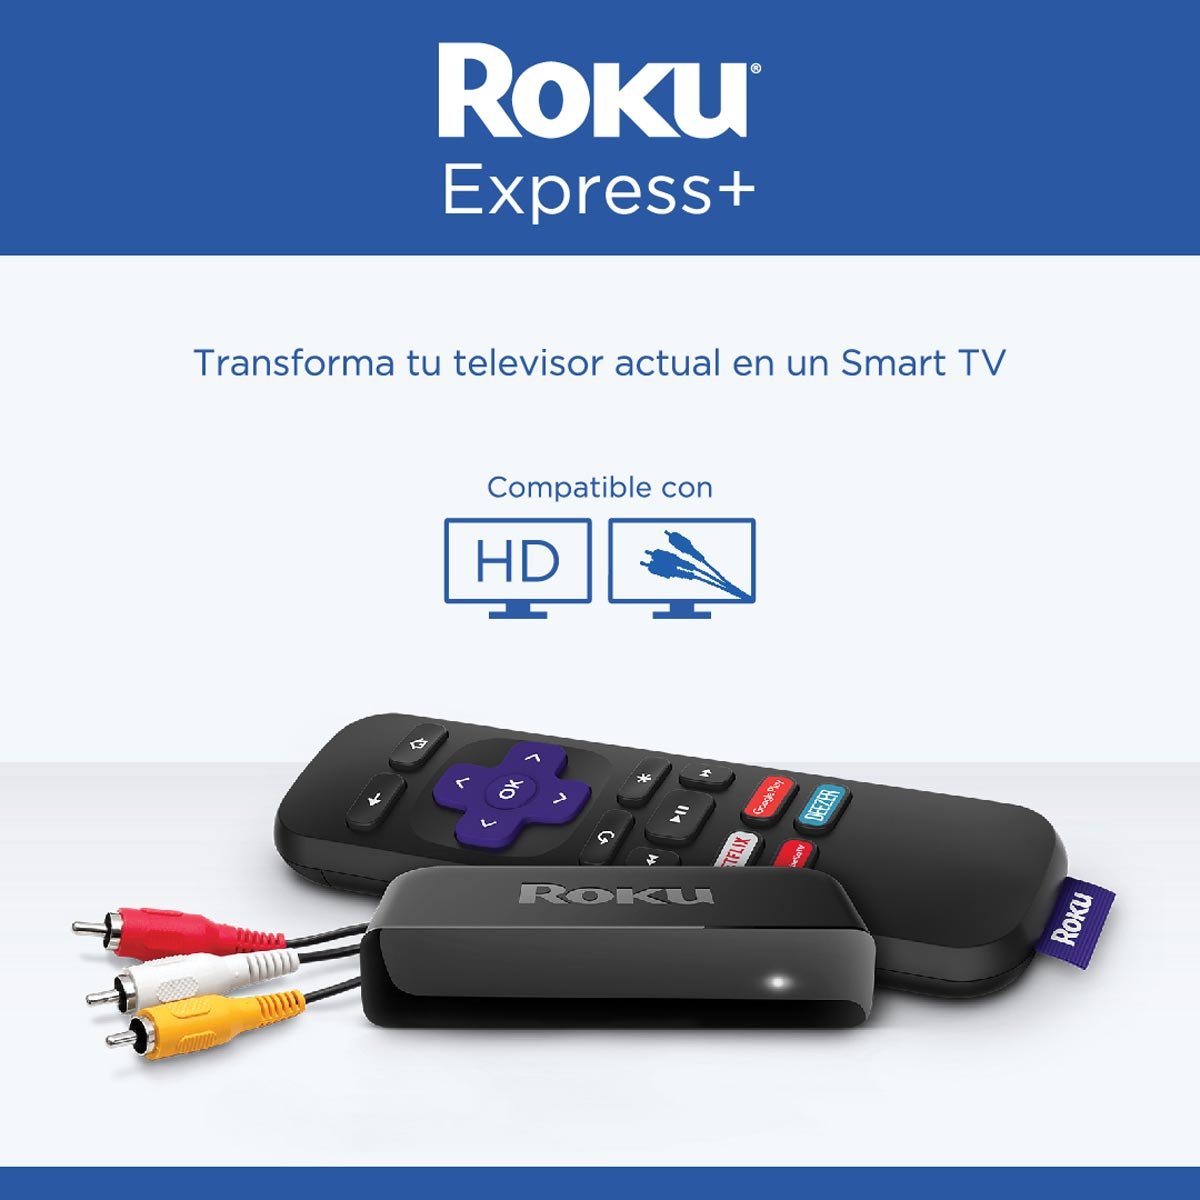 Reproductor Roku Express + Hd Streaming